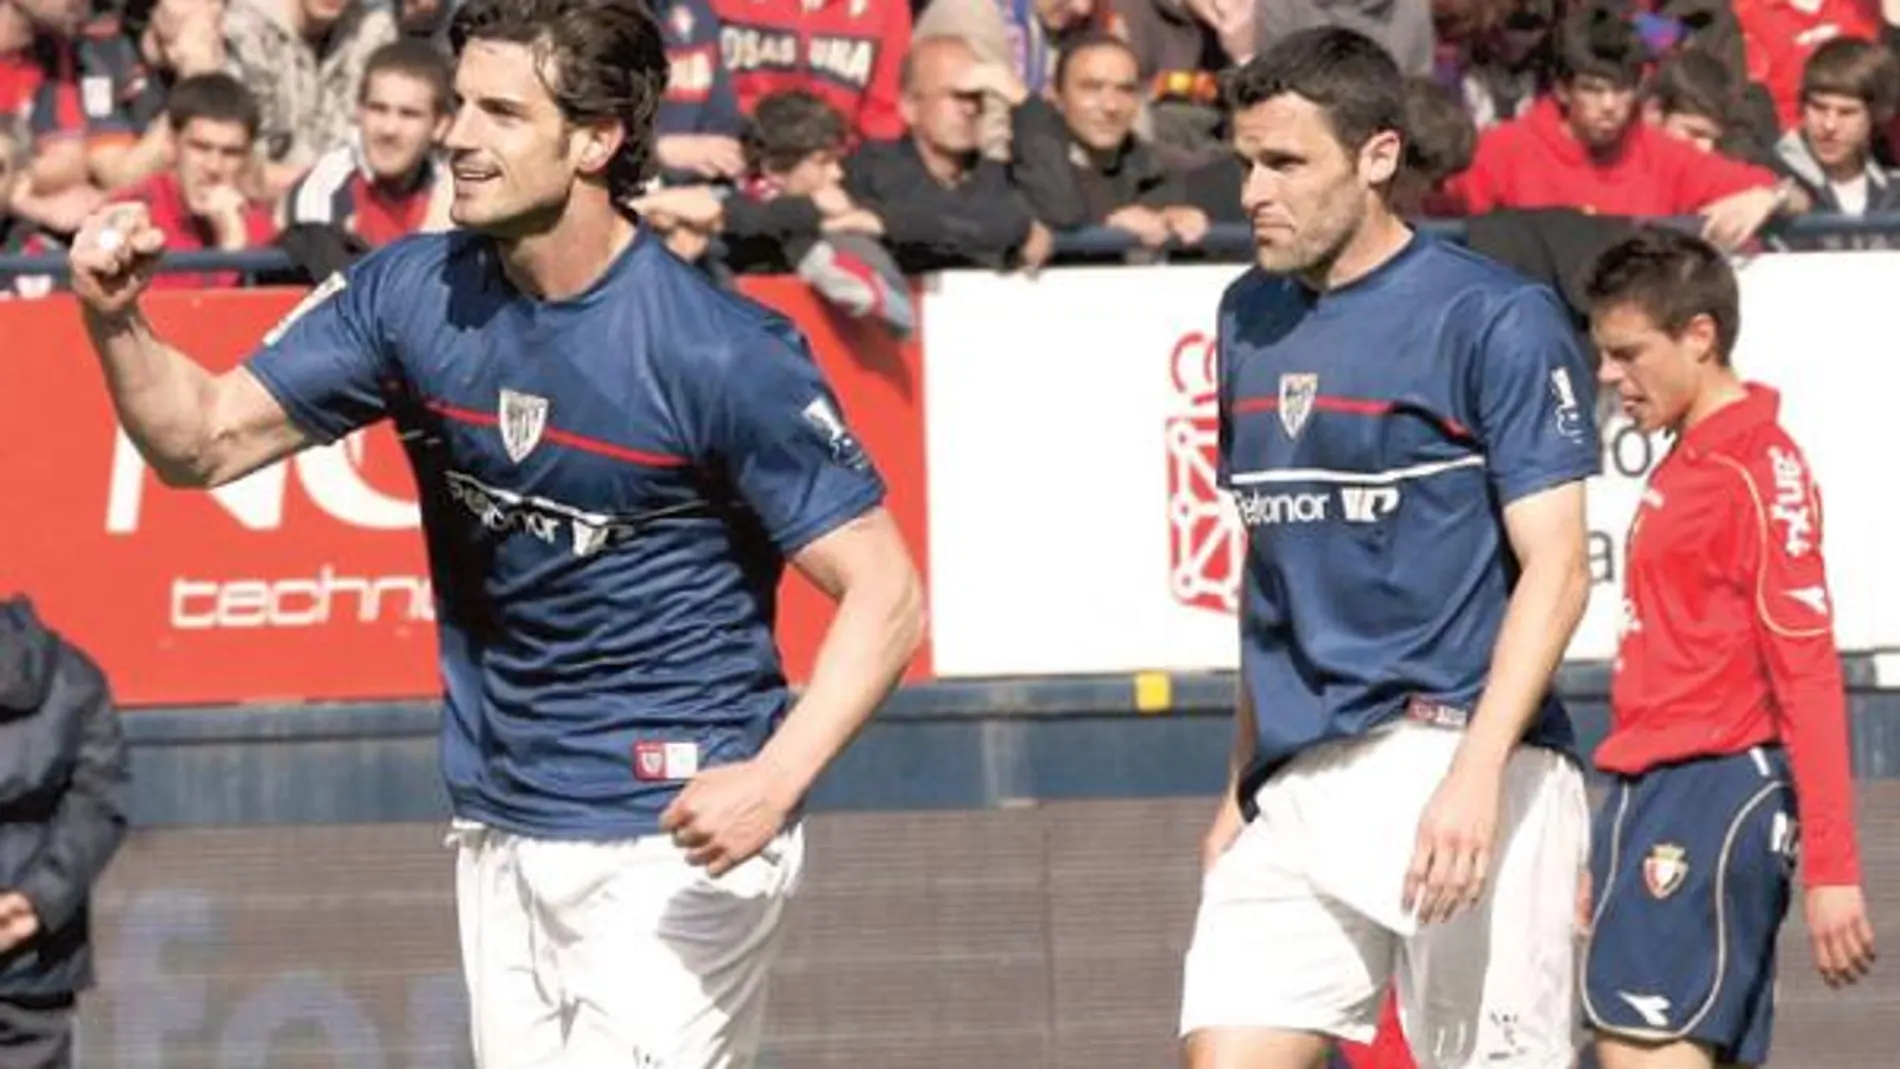 Aitor Ocio celebra el gol que marcó en Pamplona. Después el jugador del Athletic fue expulsado por el colegiado Mateu Lahoz